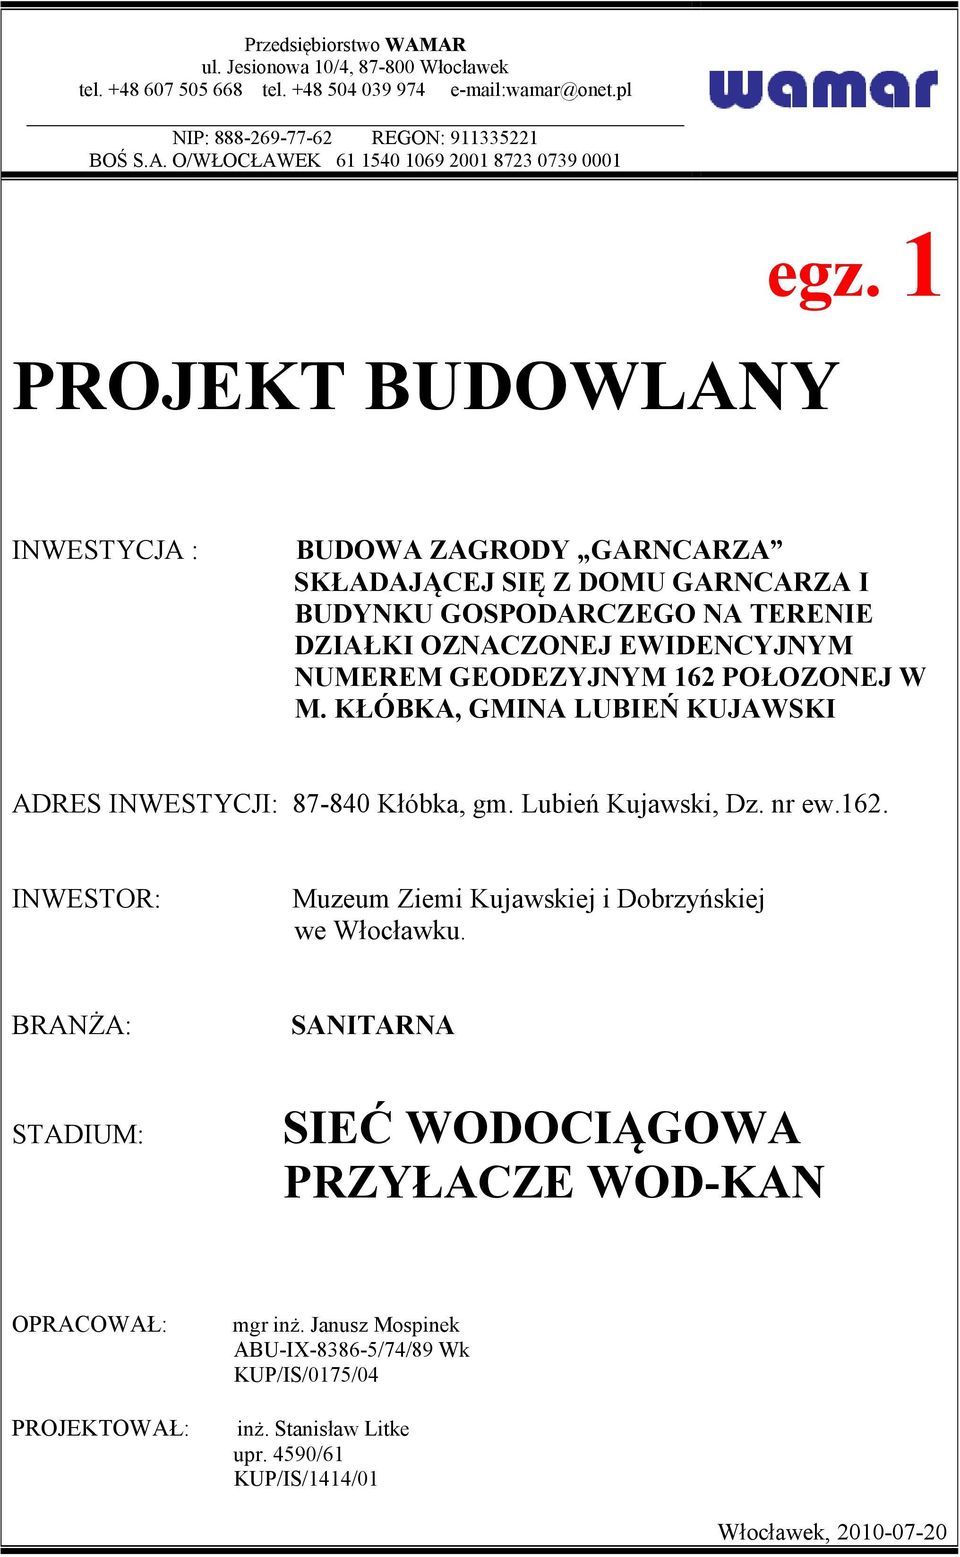 KŁÓBKA, GMINA LUBIEŃ KUJAWSKI ADRES INWESTYCJI: 87-840 Kłóbka, gm. Lubień Kujawski, Dz. nr ew.162. INWESTOR: Muzeum Ziemi Kujawskiej i Dobrzyńskiej we Włocławku.